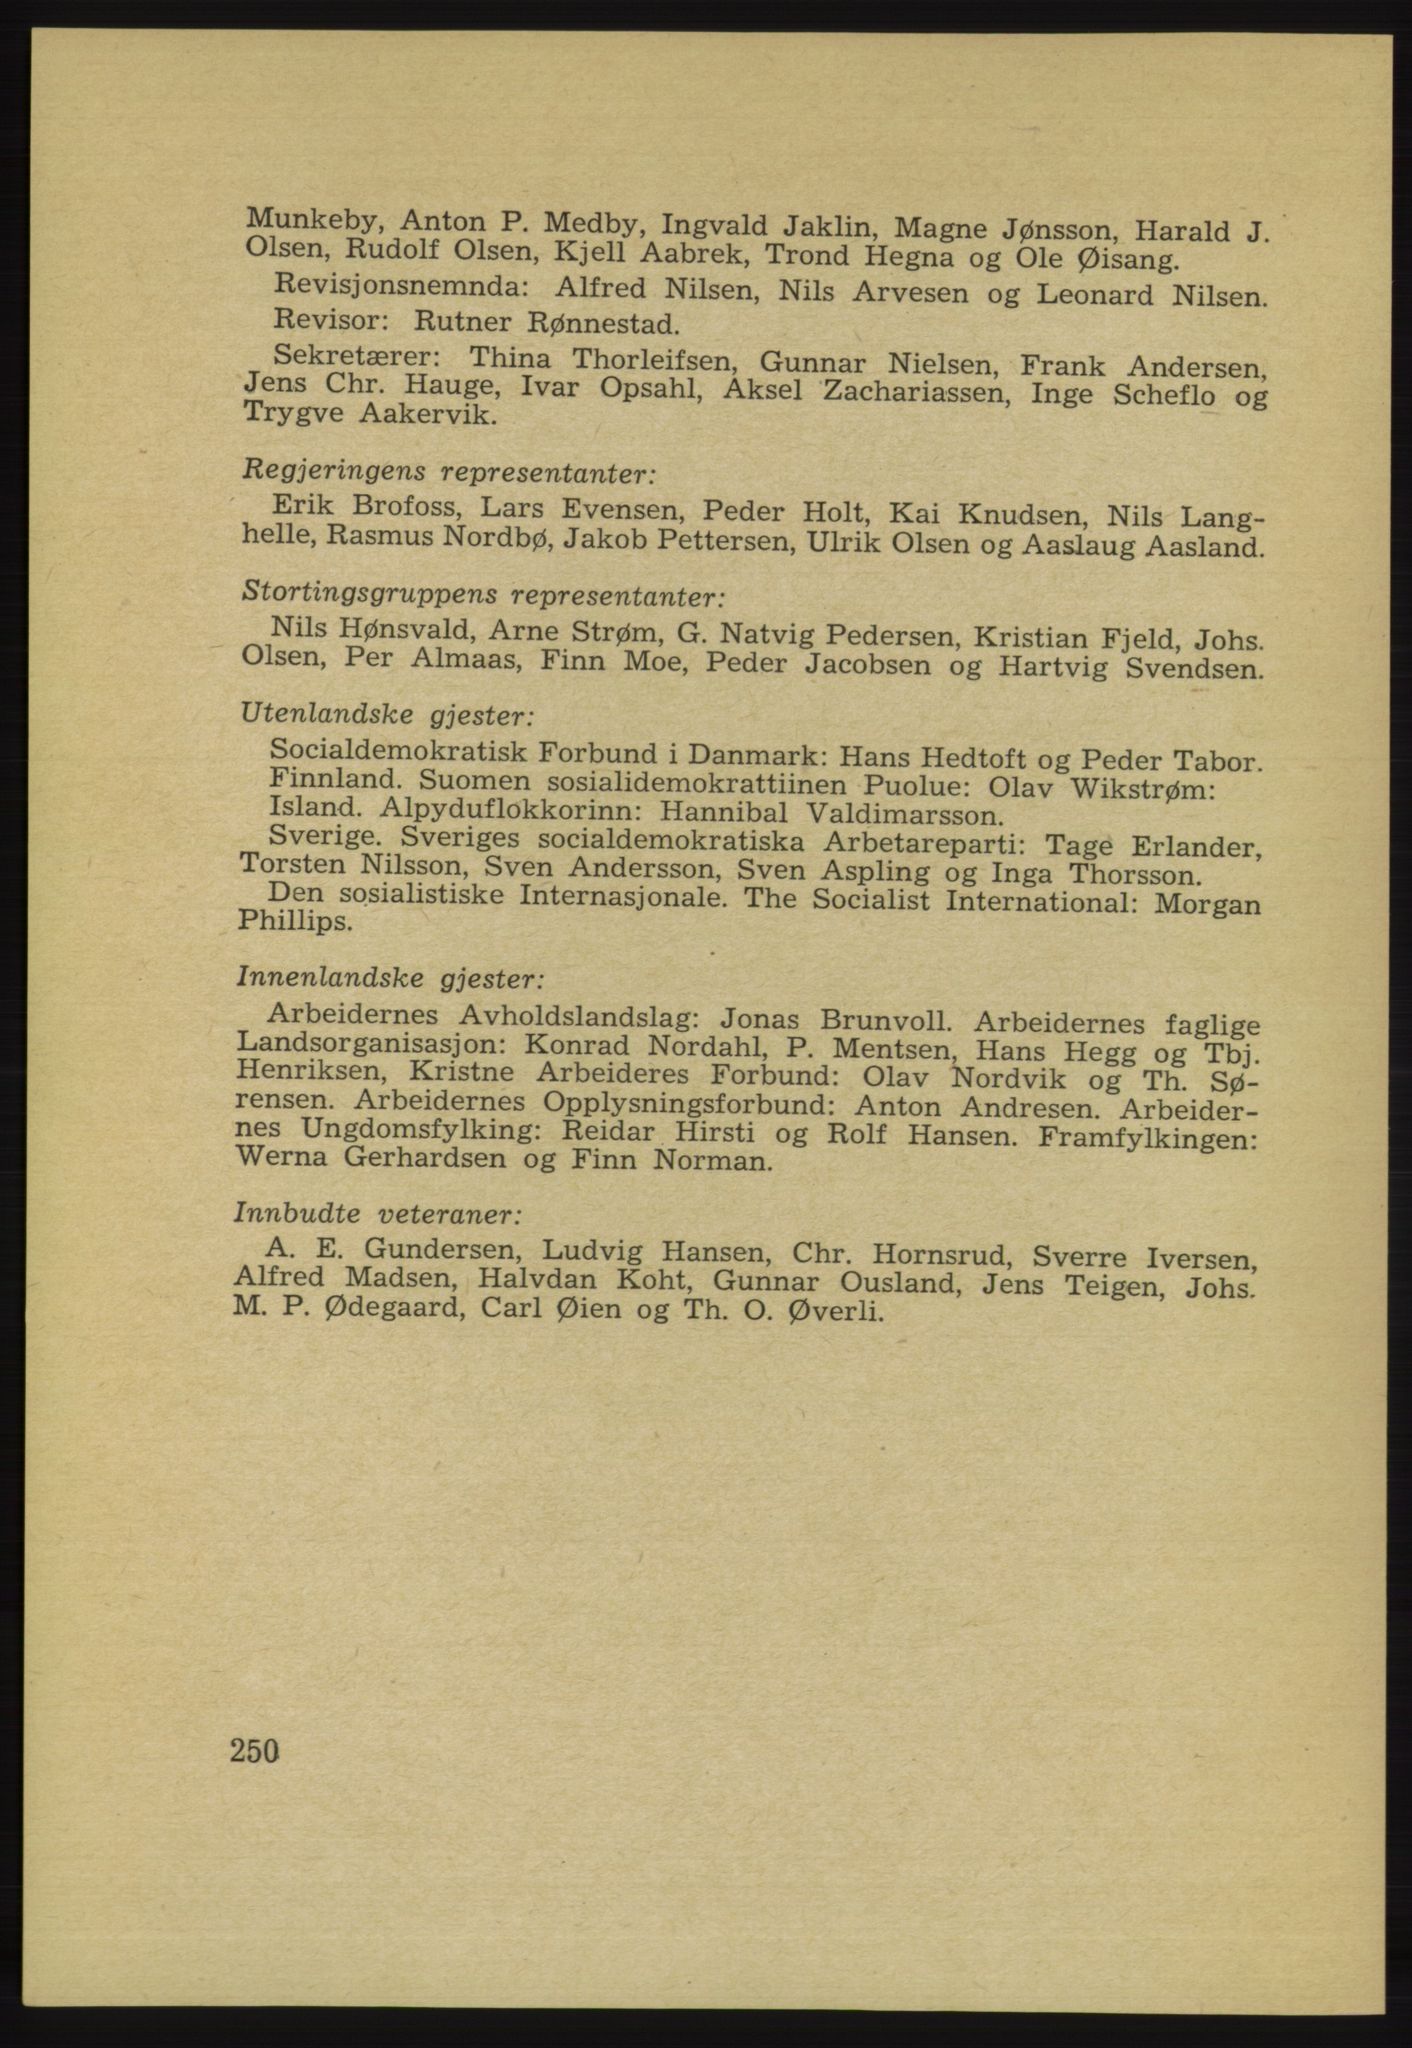 Det norske Arbeiderparti - publikasjoner, AAB/-/-/-: Protokoll over forhandlingene på det 34. ordinære landsmøte 22.-25. mars 1953 i Oslo, 1953, p. 250